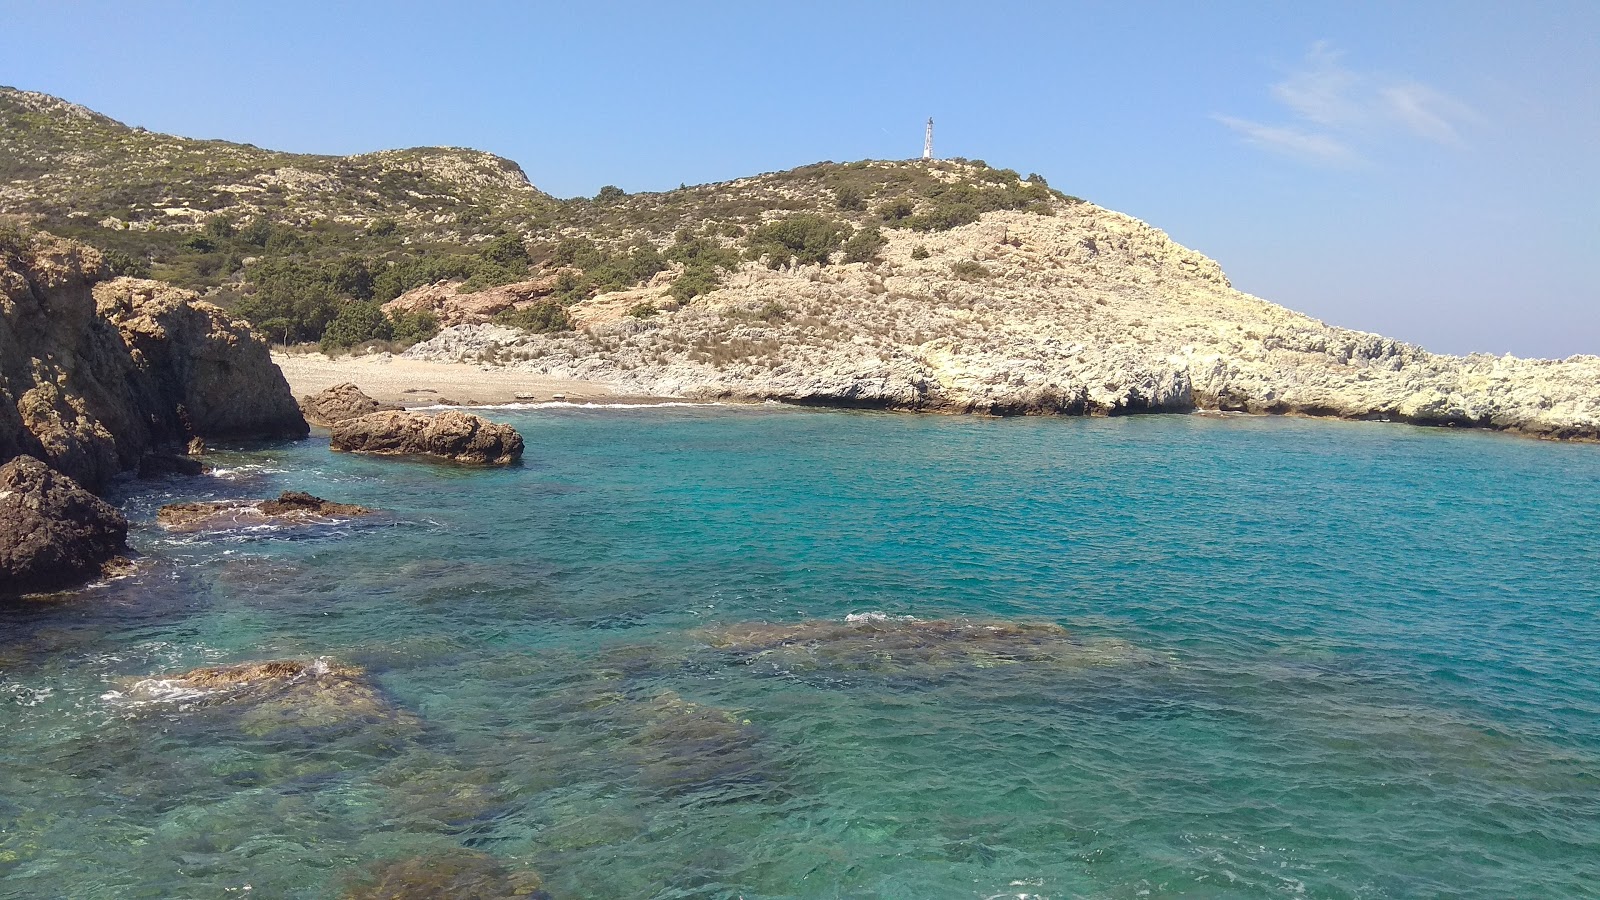 Agios Georgios'in fotoğrafı açık yeşil su yüzey ile